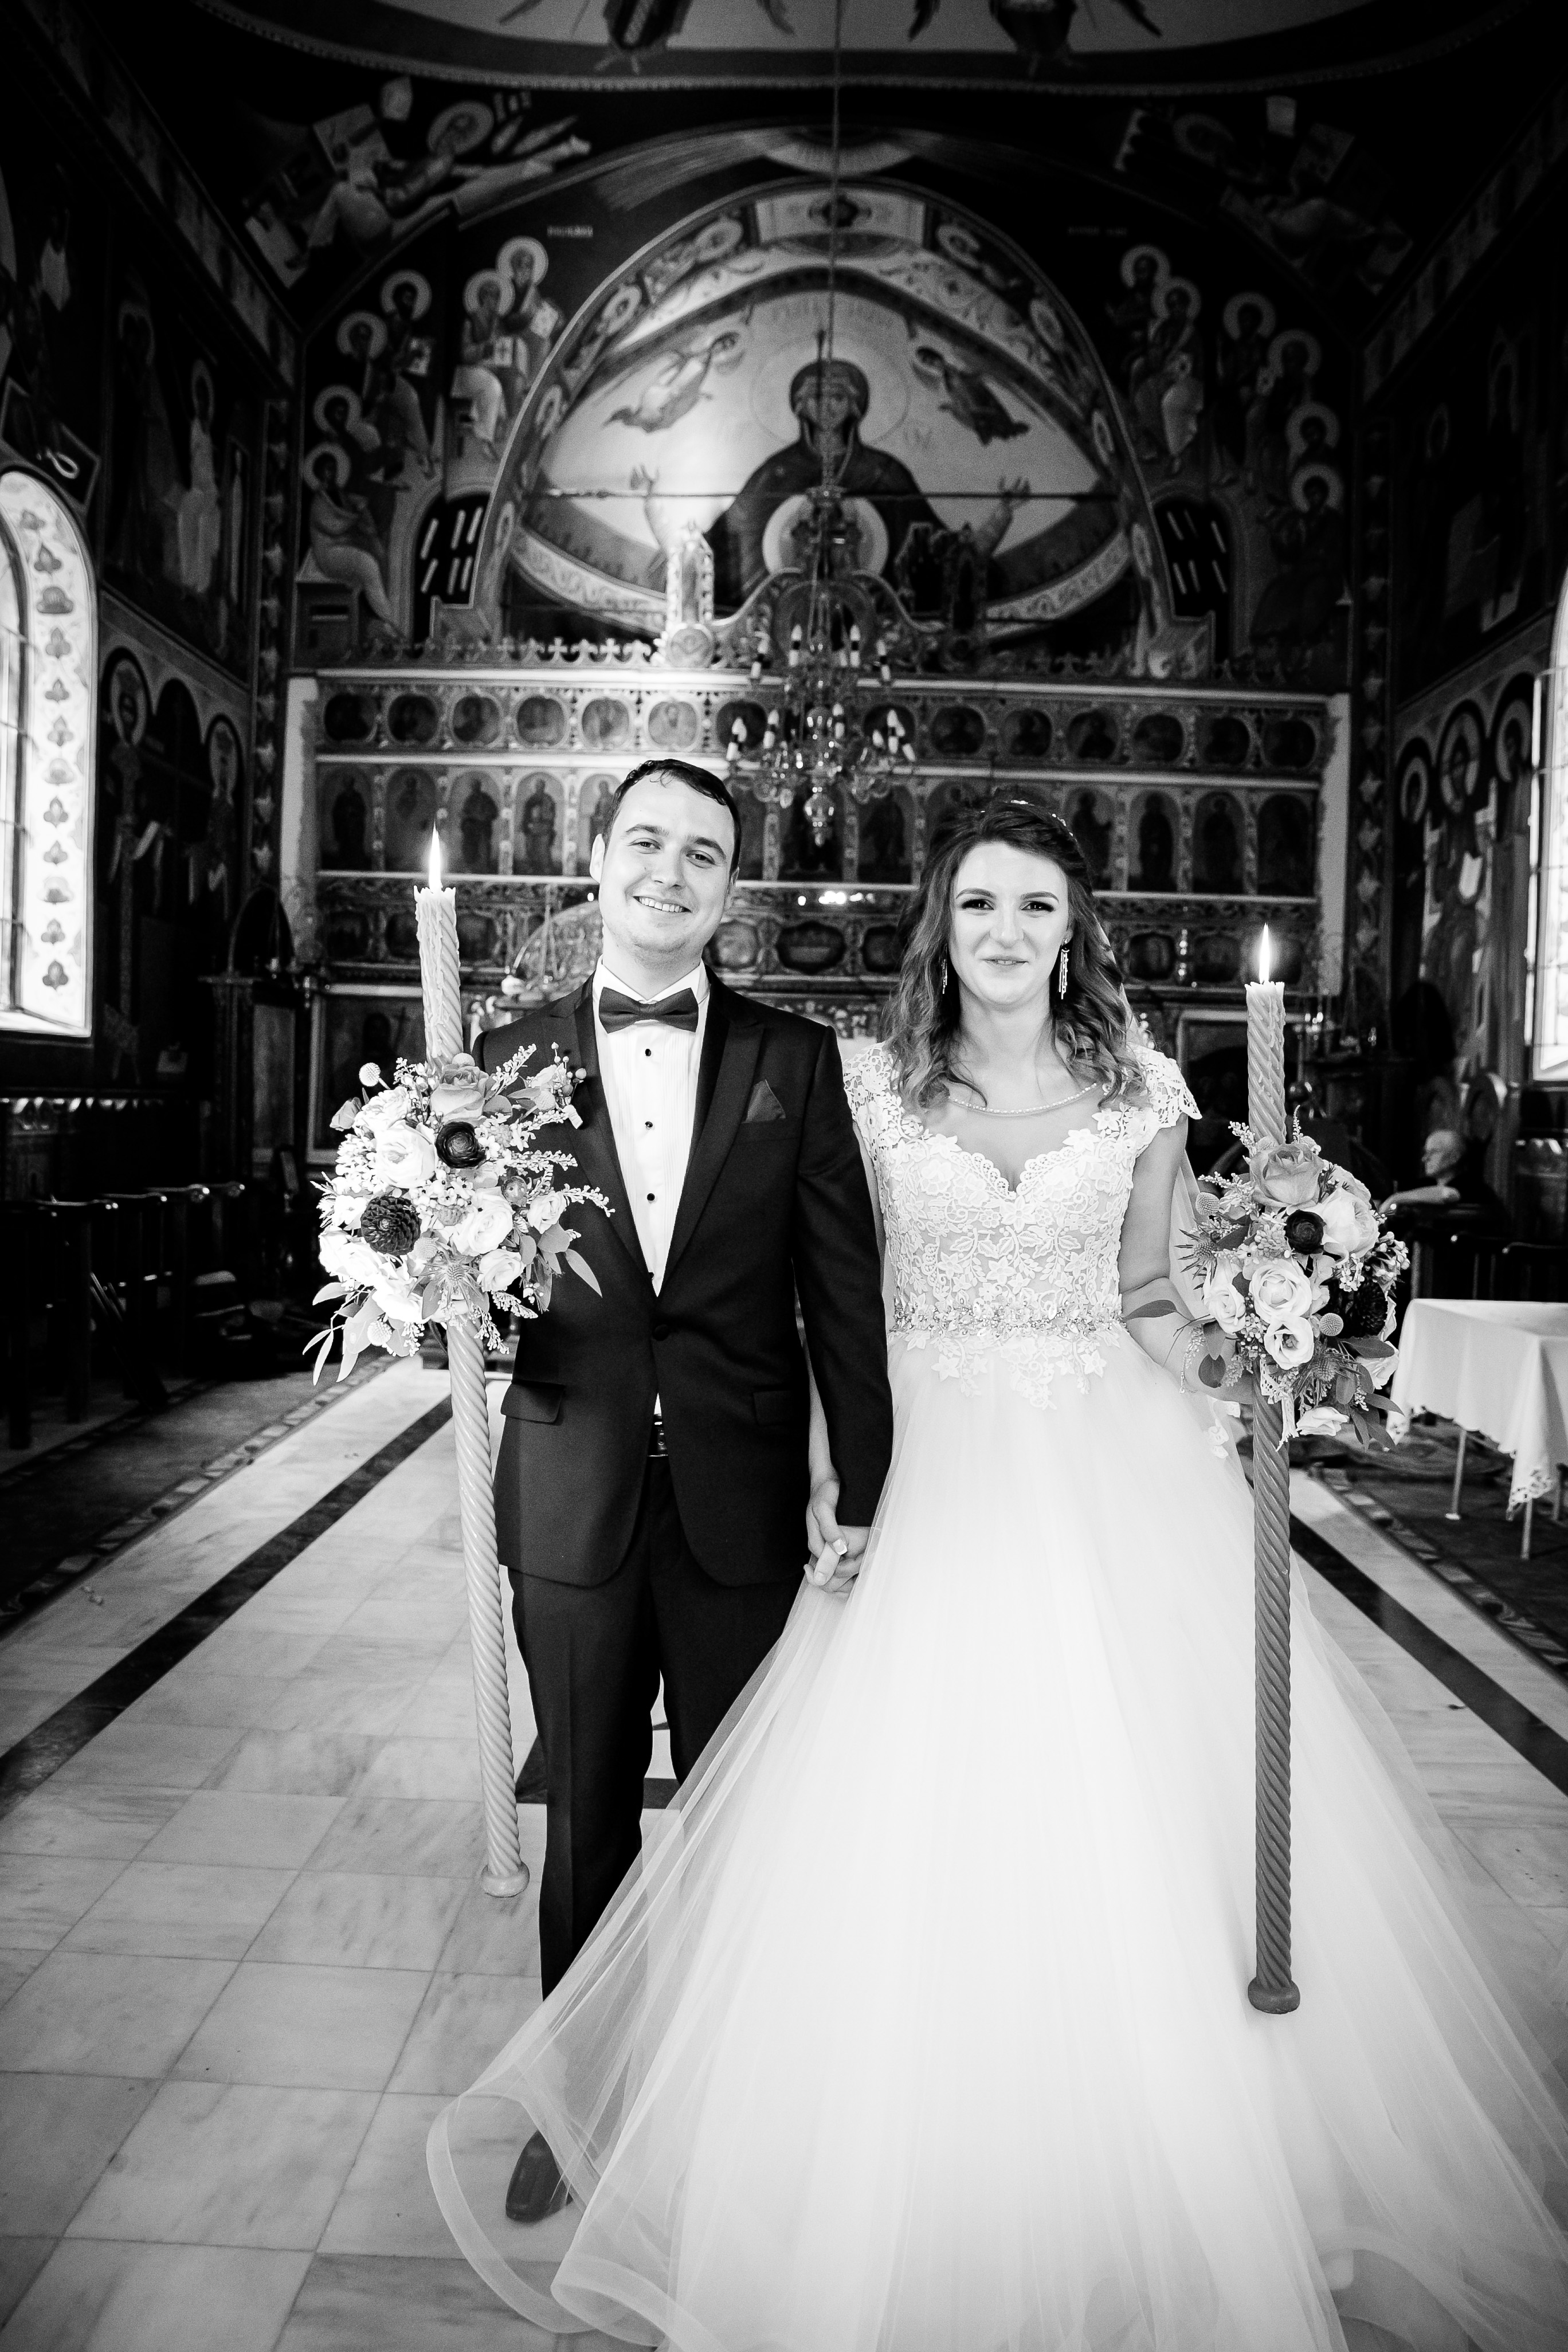 Alexandra si Vlad nunta iasi dupa cununia religiosa - fotograf profesionist nunta www.paulpadurariu.ro © 2017 Paul Padurariu